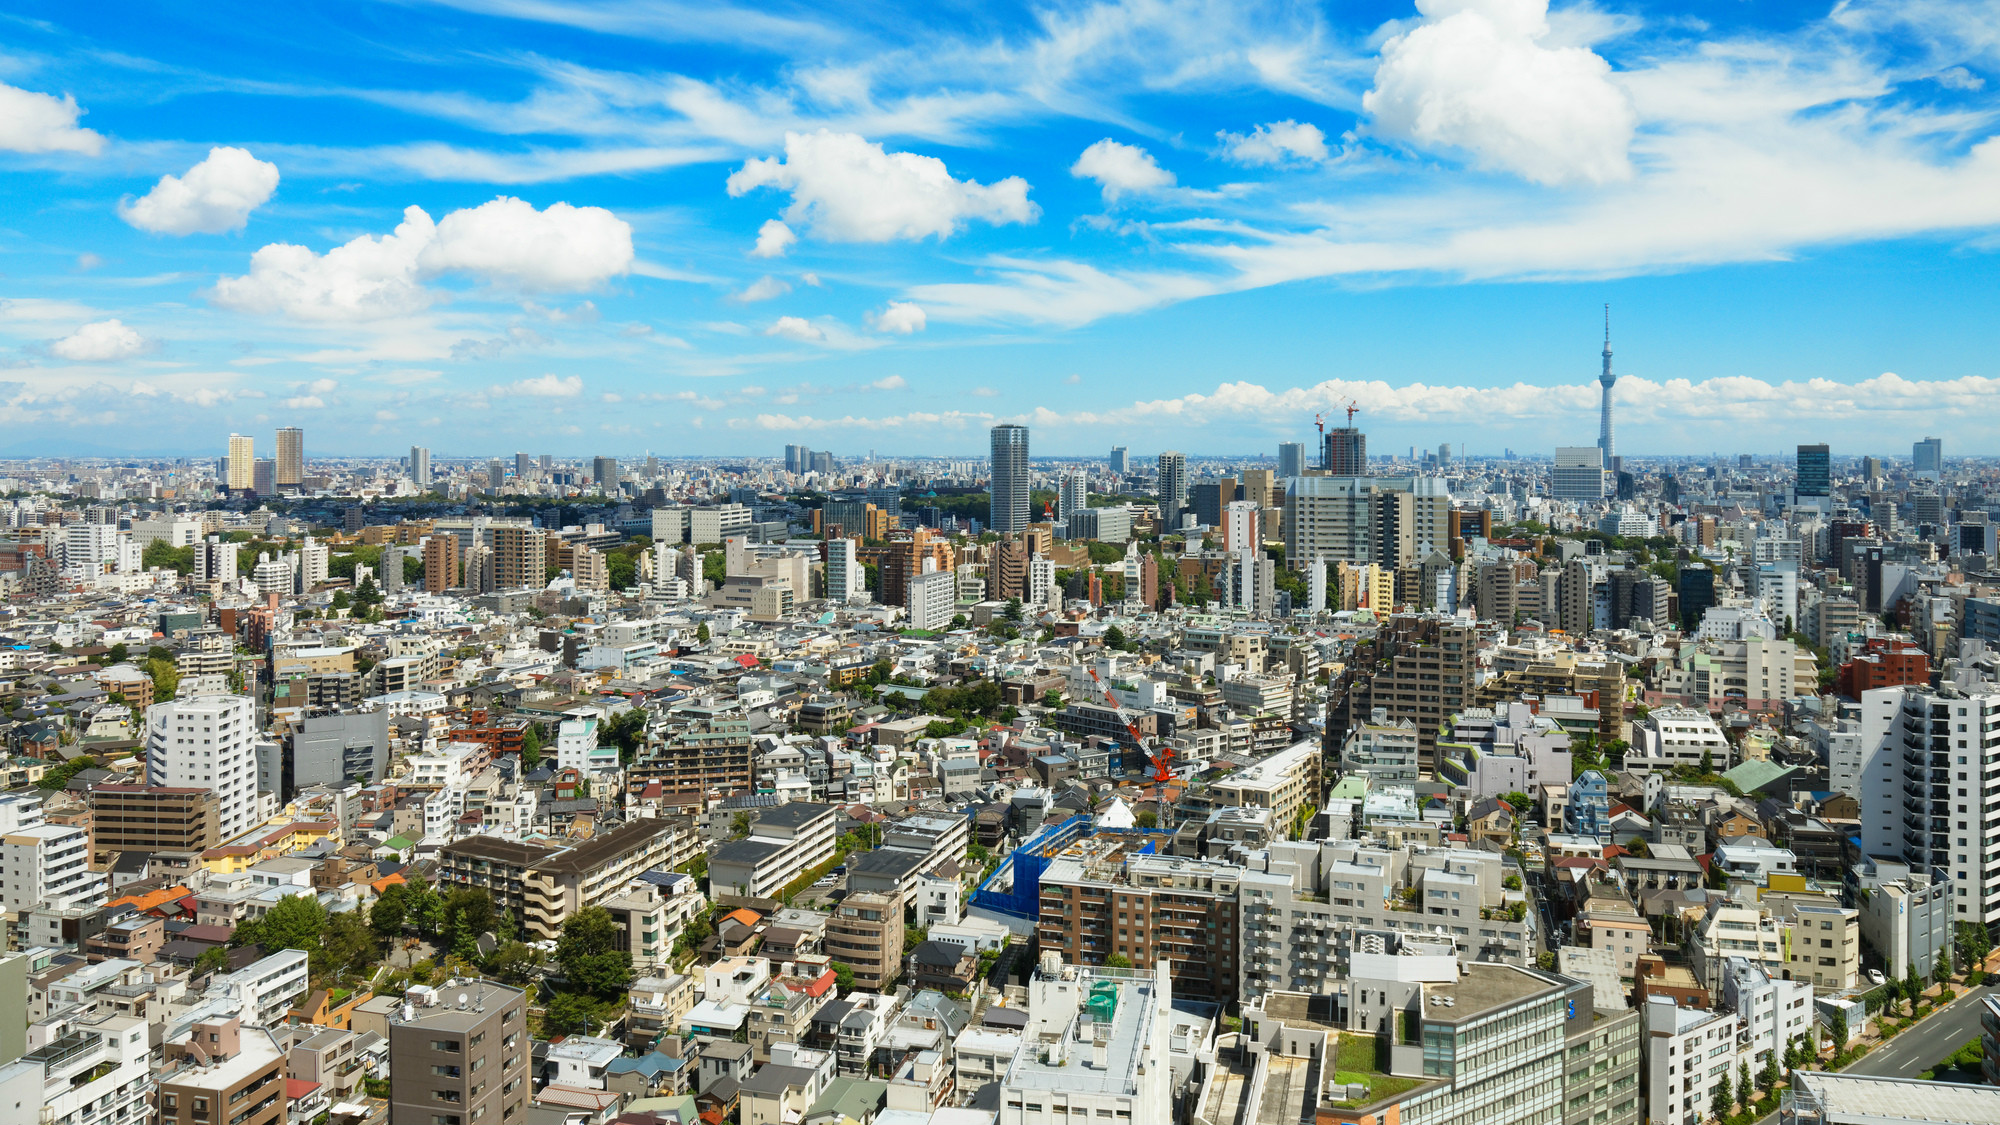 関東大震災が警告…軟弱の地盤にこのまま都市を作り続けるのか